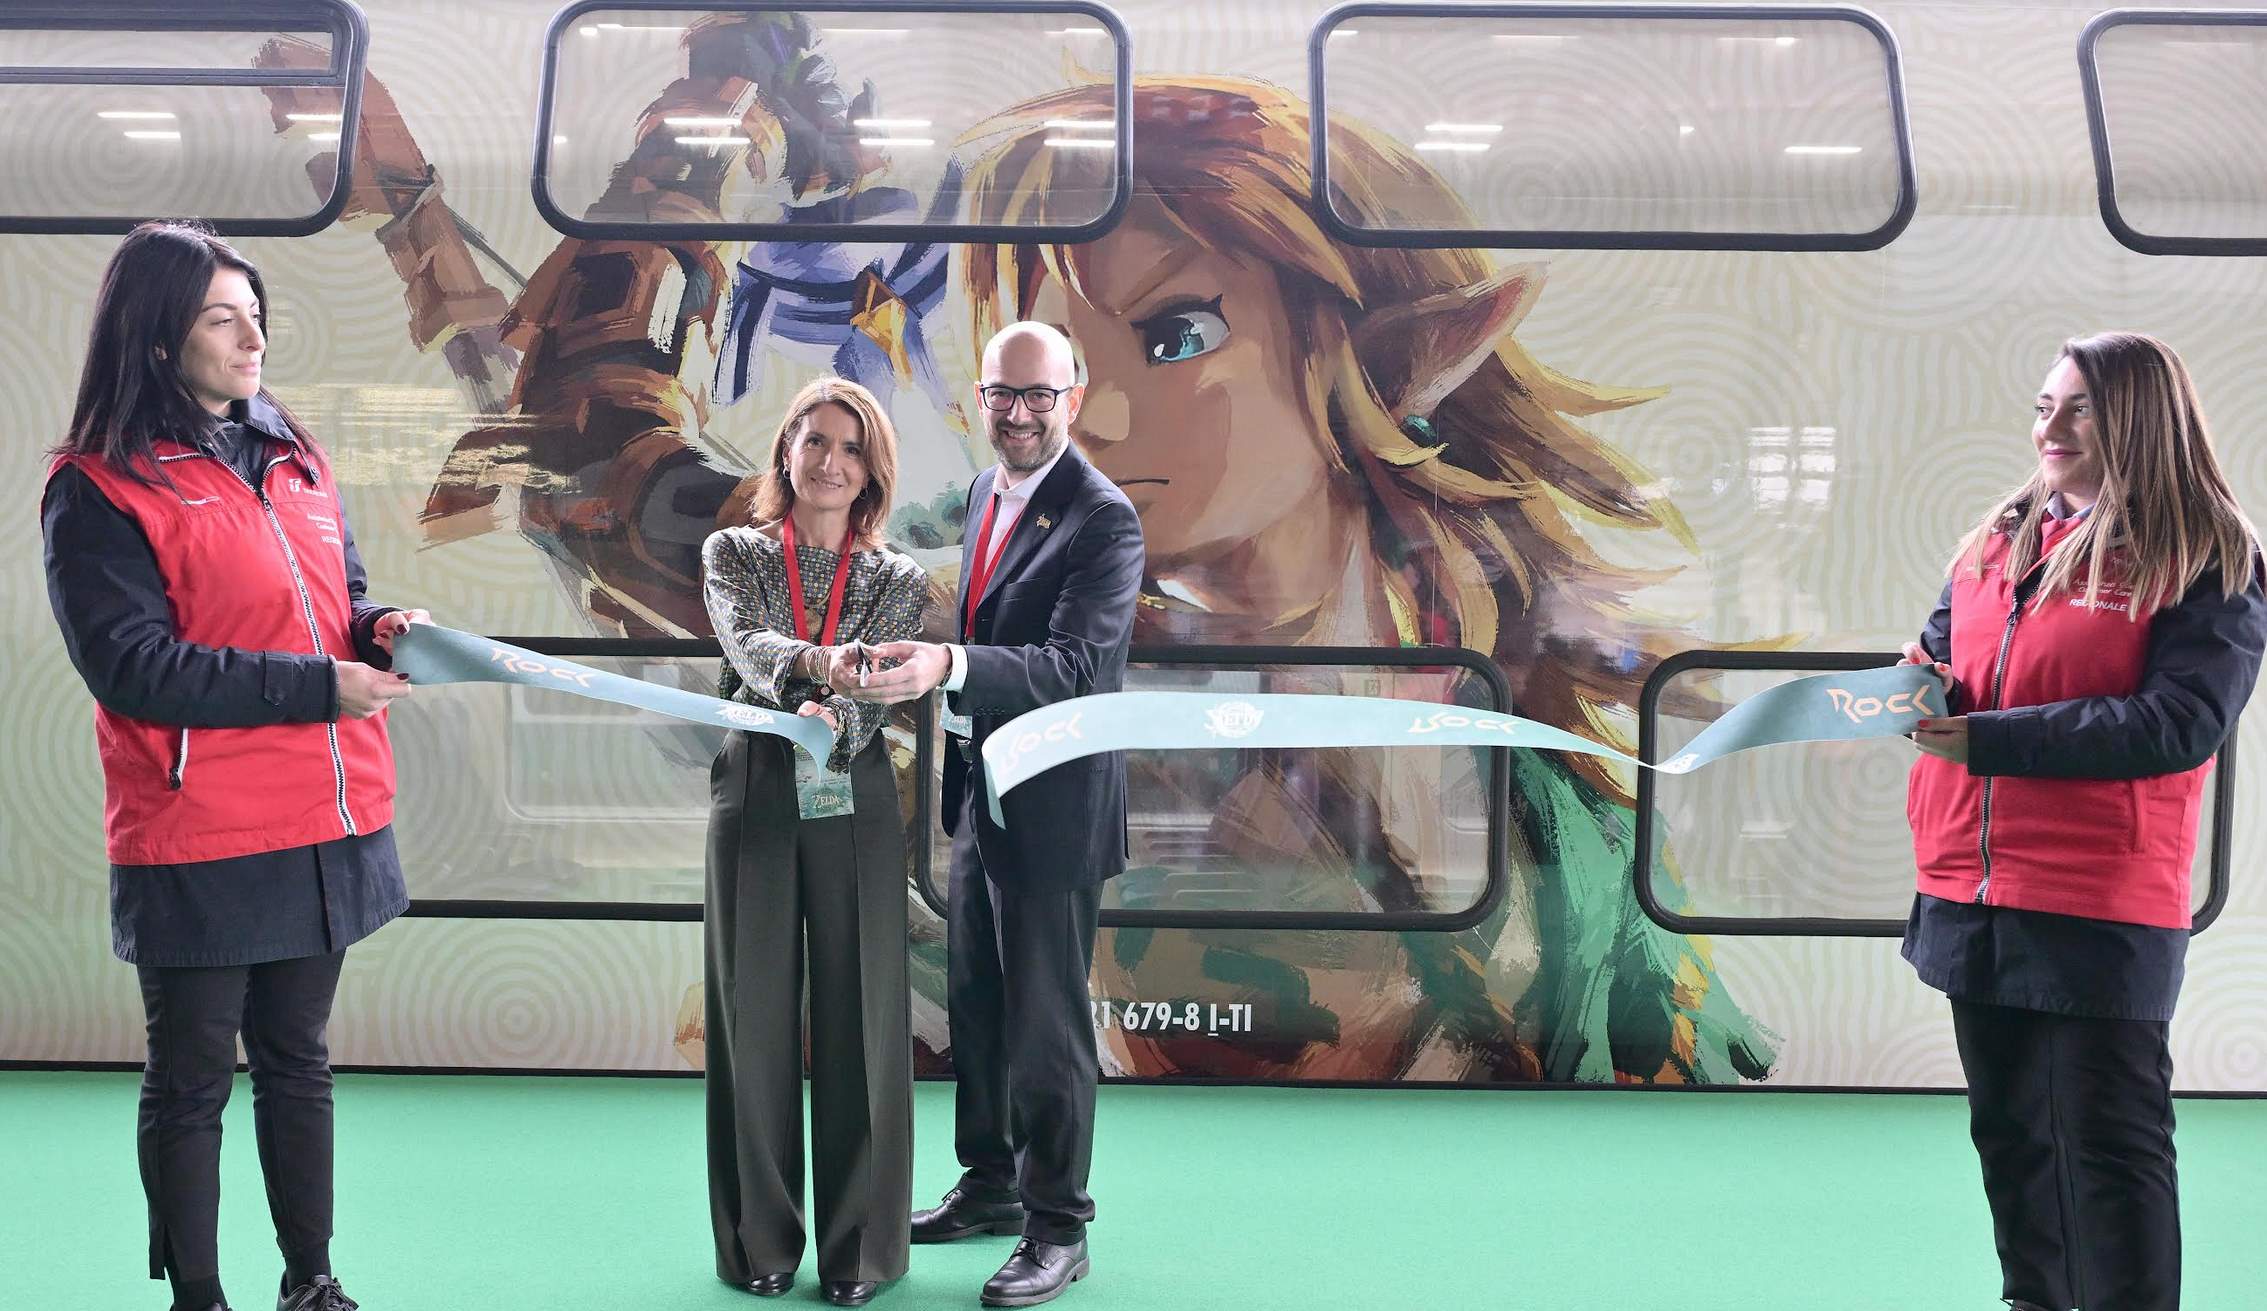 Nintendo Italia e Trenitalia inaugurano il primo treno dedicato a The Legend of Zelda